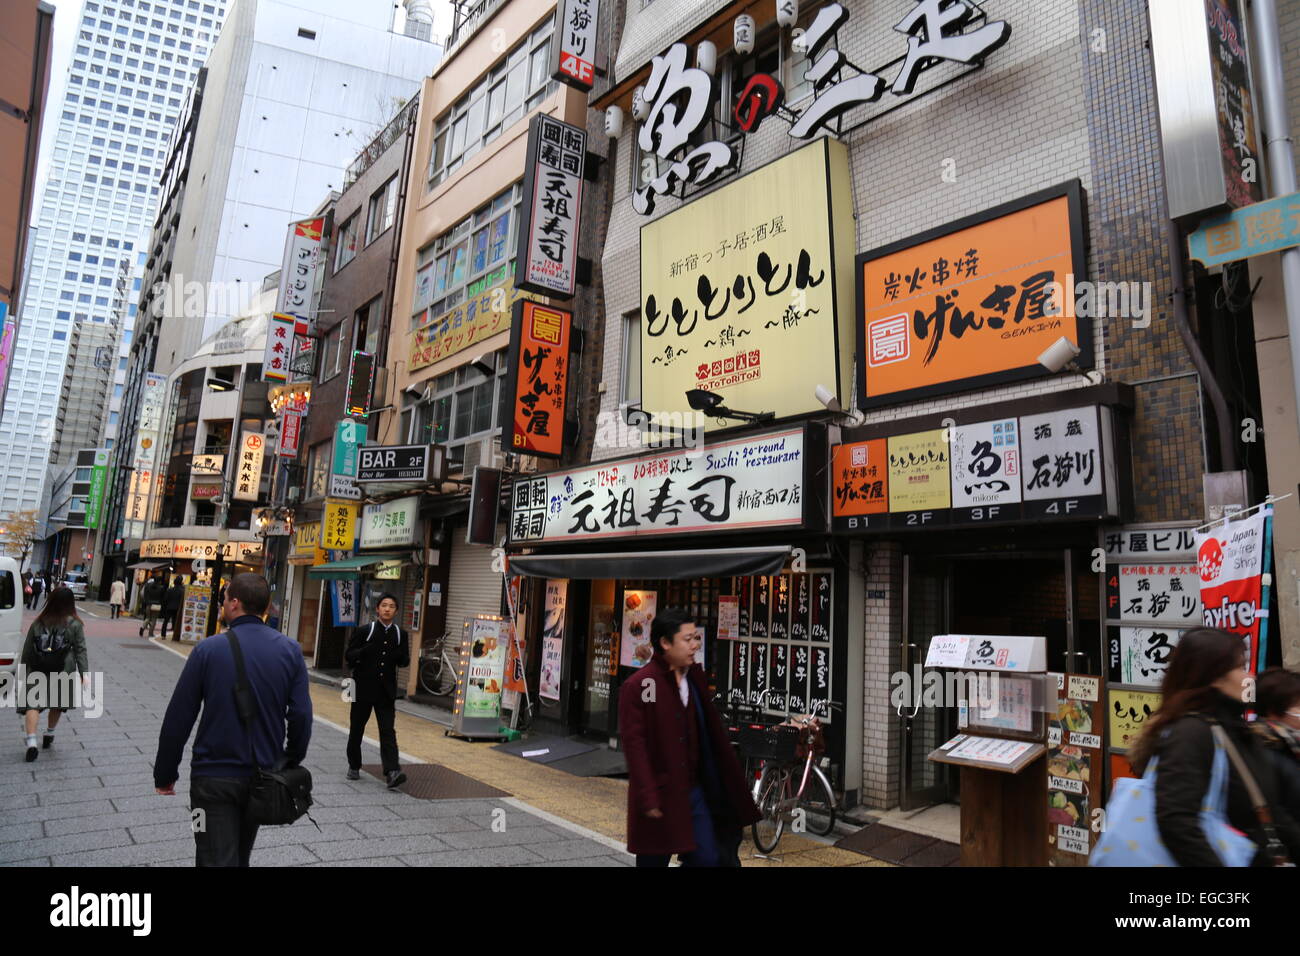 Japanische Restaurants und Geschäfte in Tokio, Japan - 2014 Stockfoto